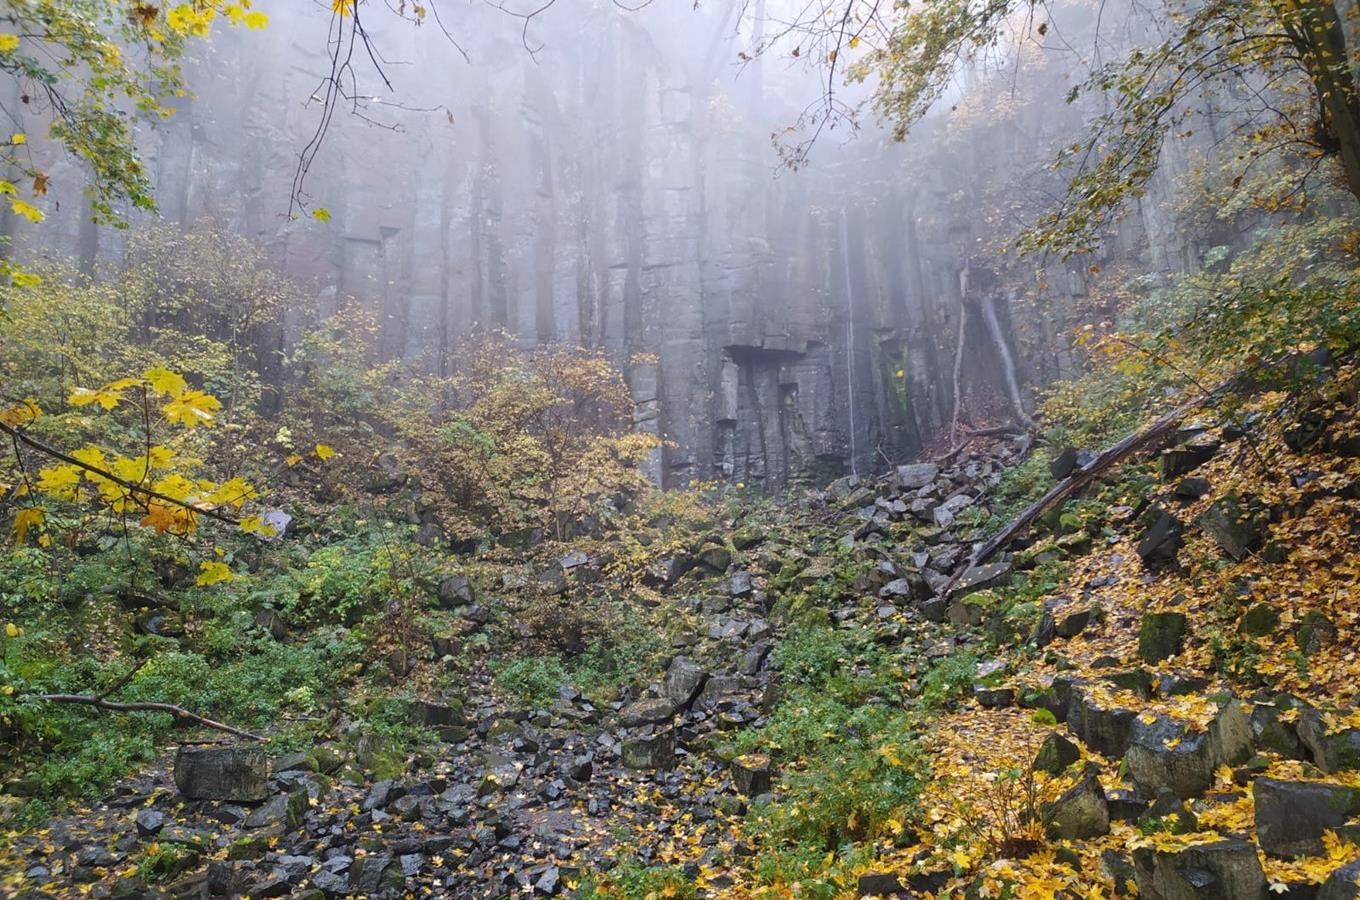 6 - Vaňovksý vodopád - jeden z nejvyšších v Českém středohoří - do 20 minut pěšky